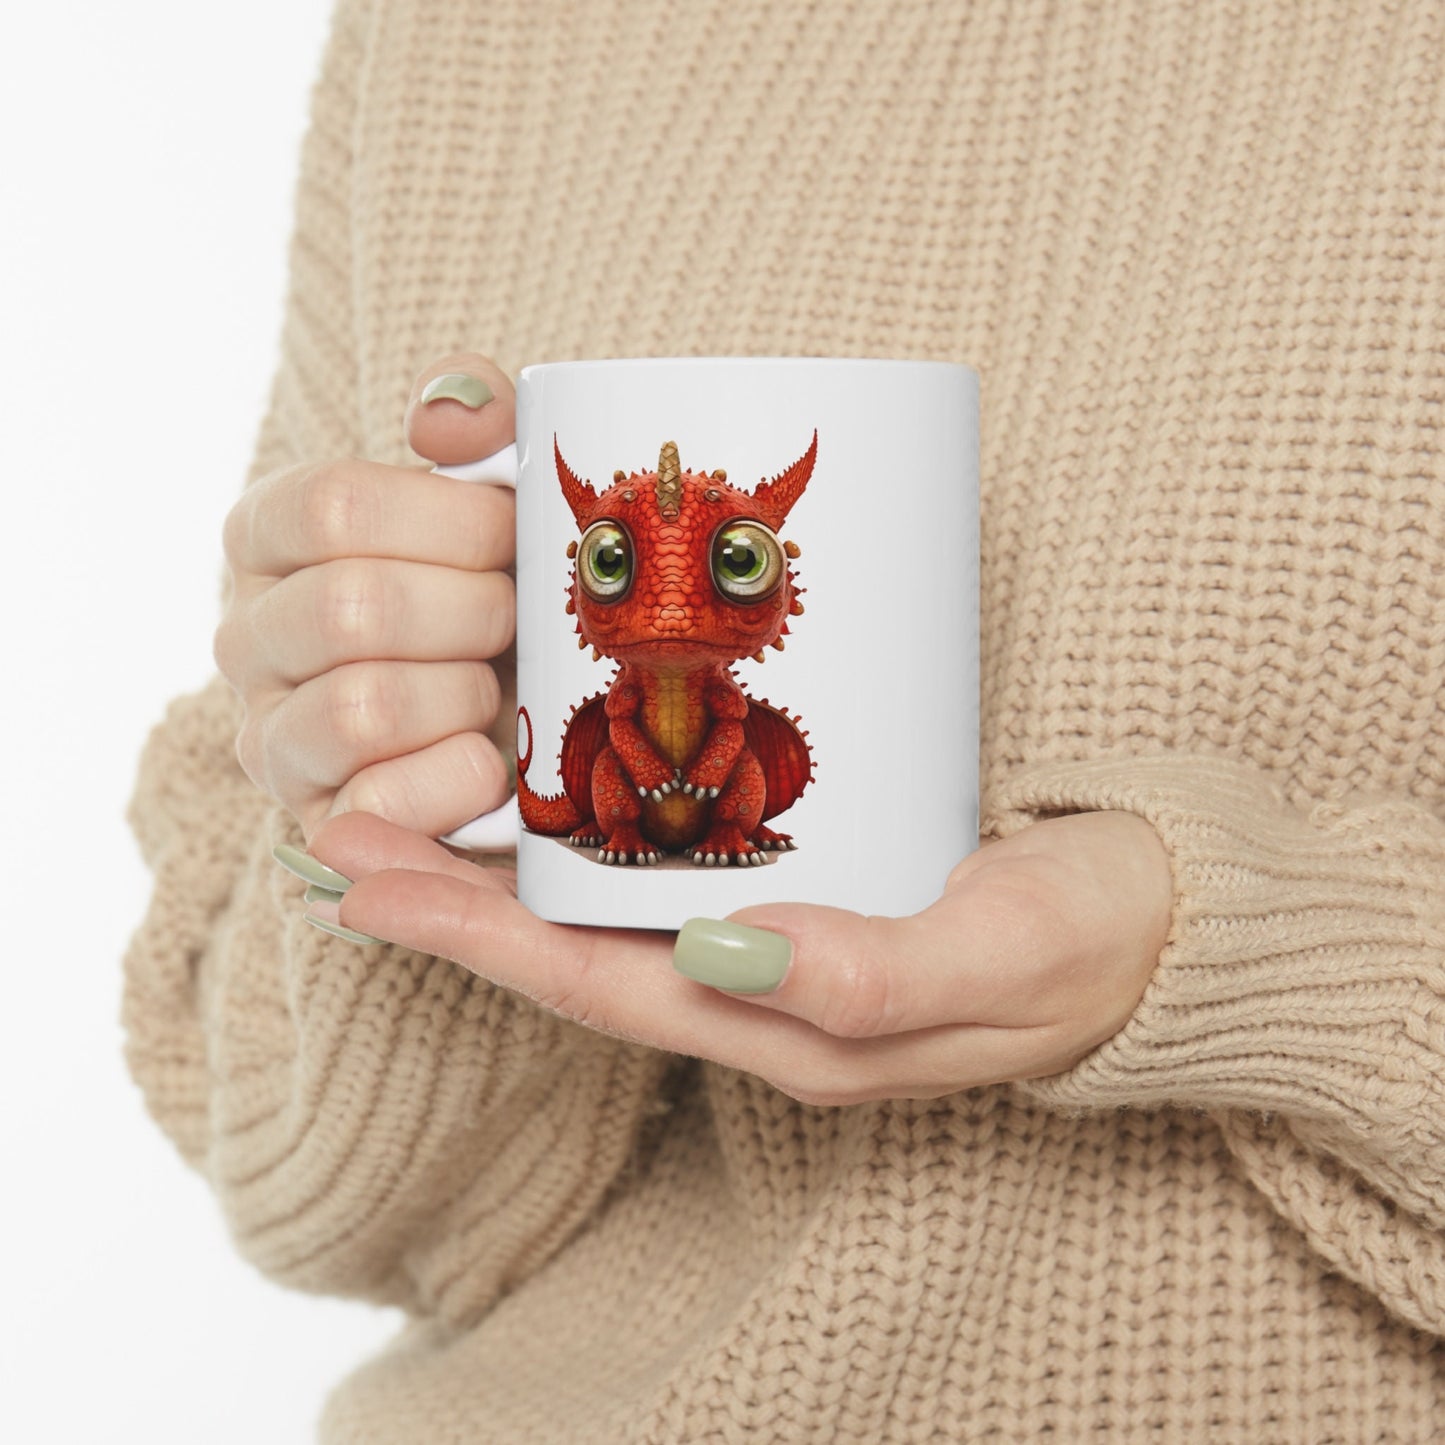 Ruby red Adorable Baby Dragon Coffee Mug, Heart of a Dragon Mug, White Ceramic Mug for Dragon Lovers, Gift Mug for your Dragon Spirit